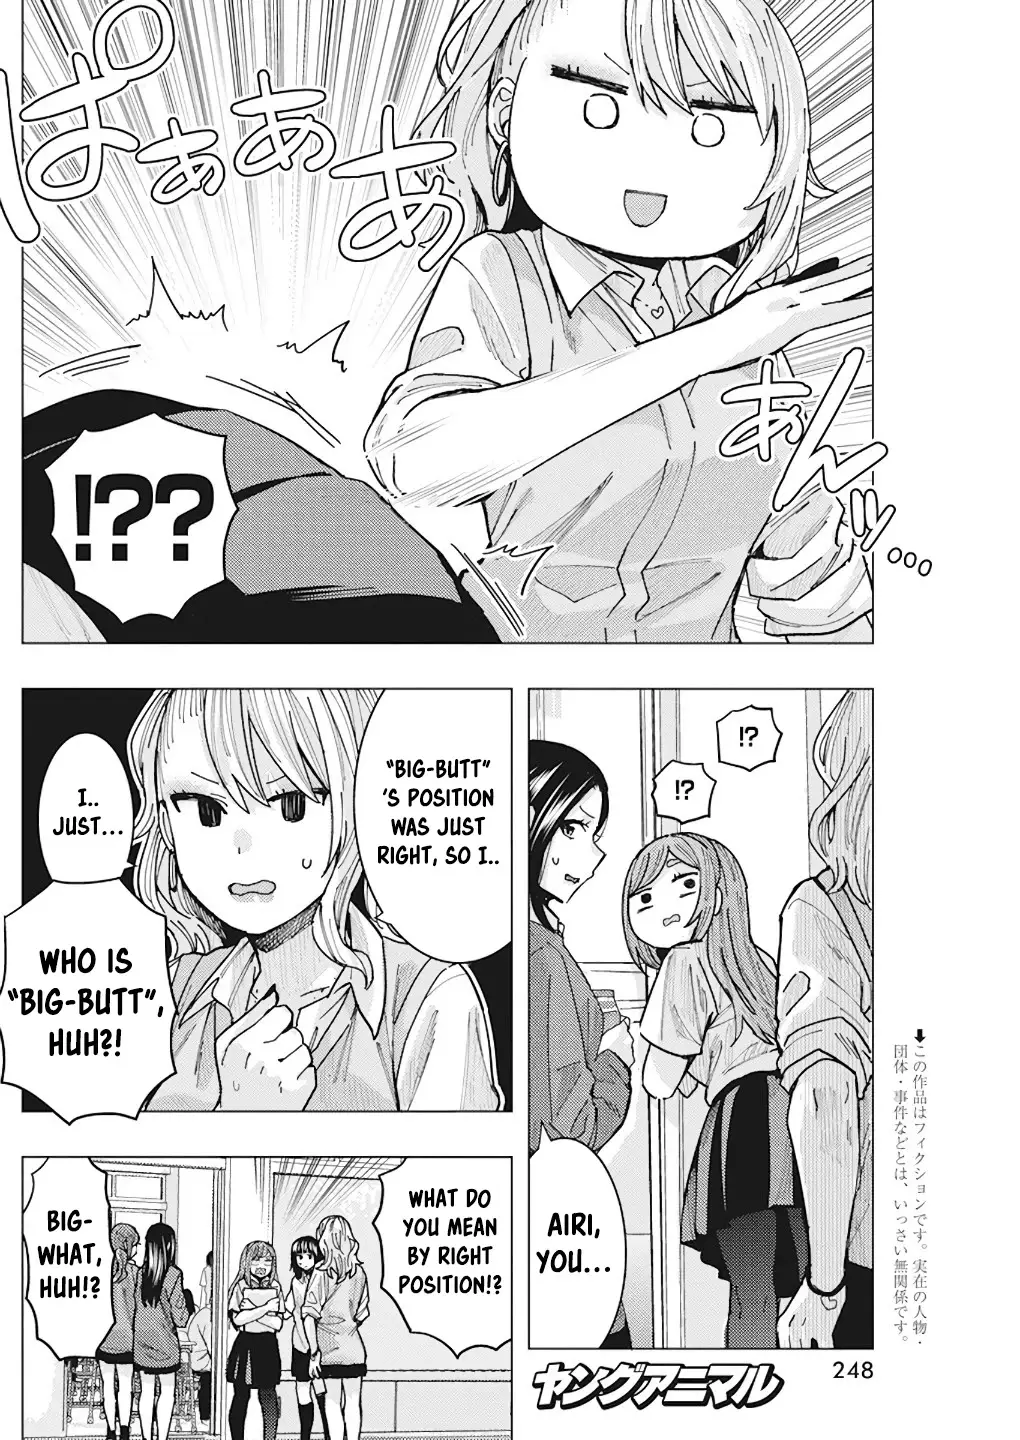 "nobukuni-San" Does She Like Me? - 14 page 4-29fca6f3